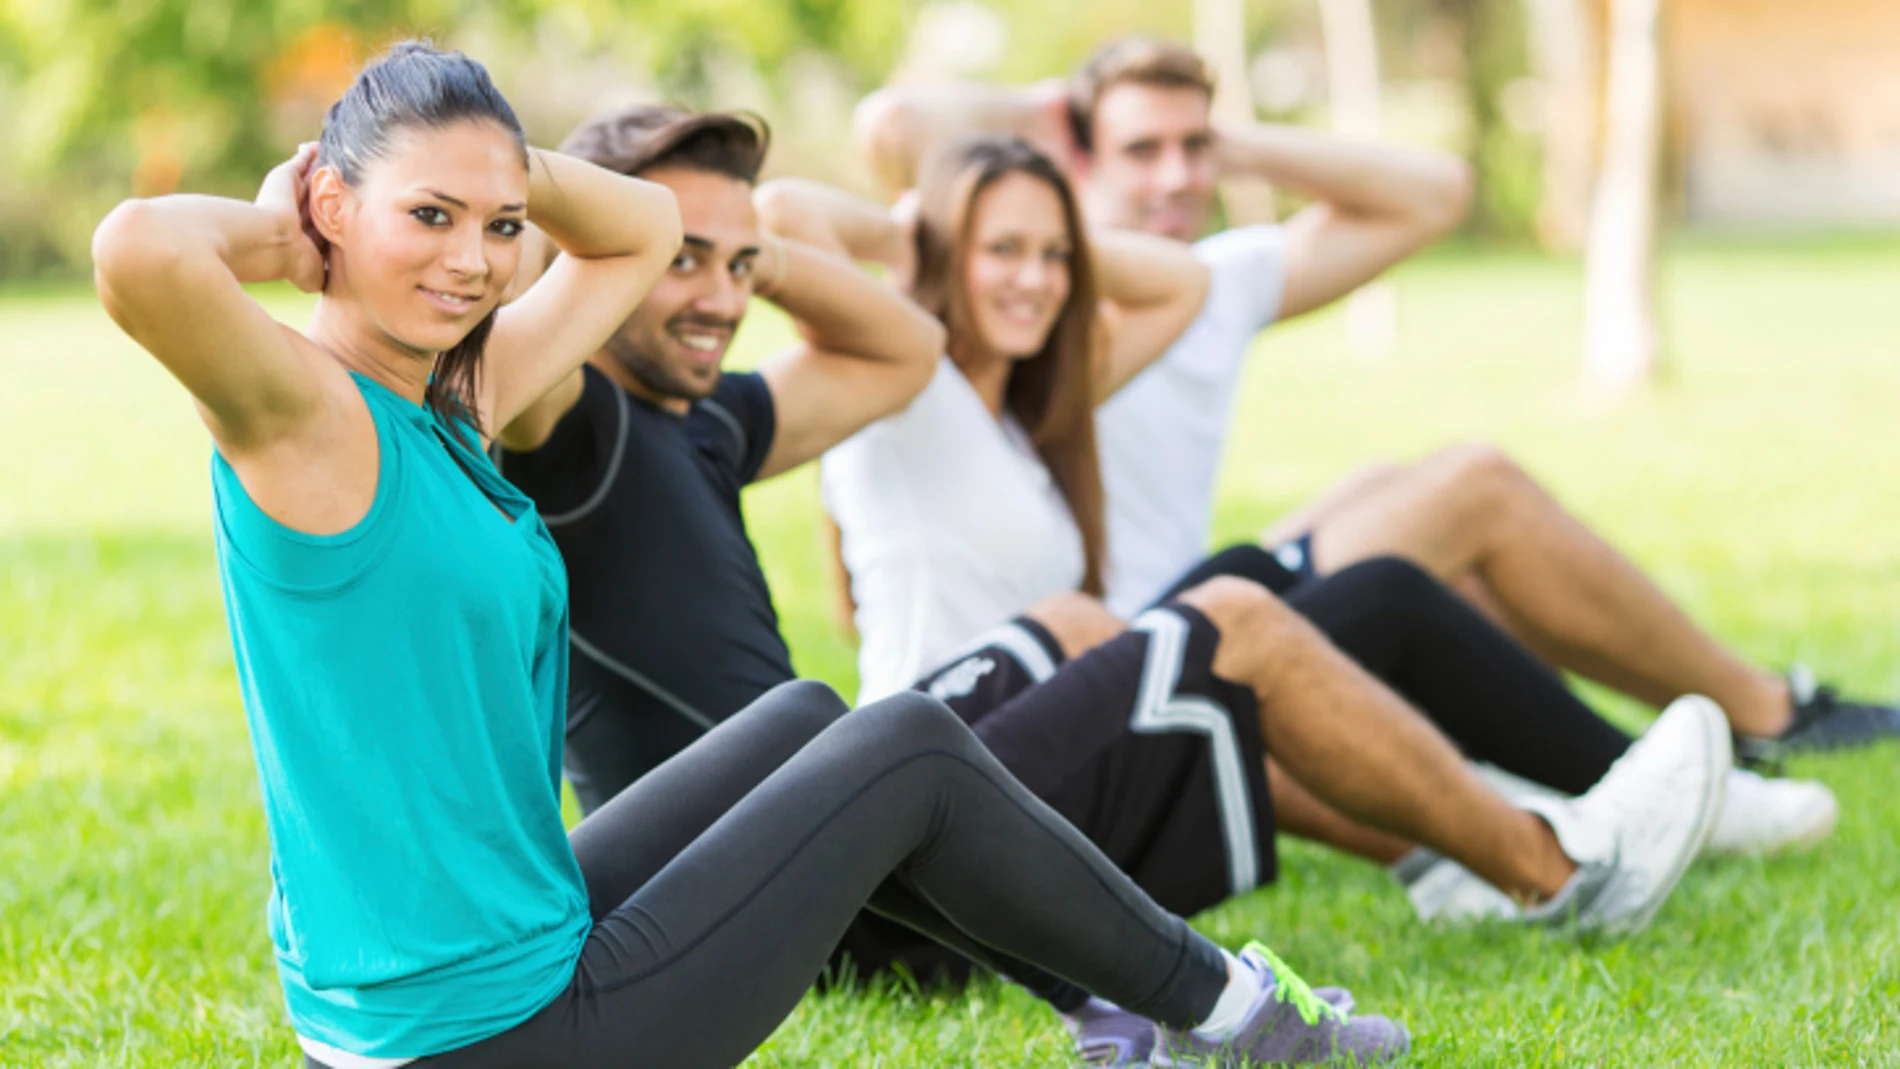 El ejercicio mejora tu salud, pero ¿cómo?